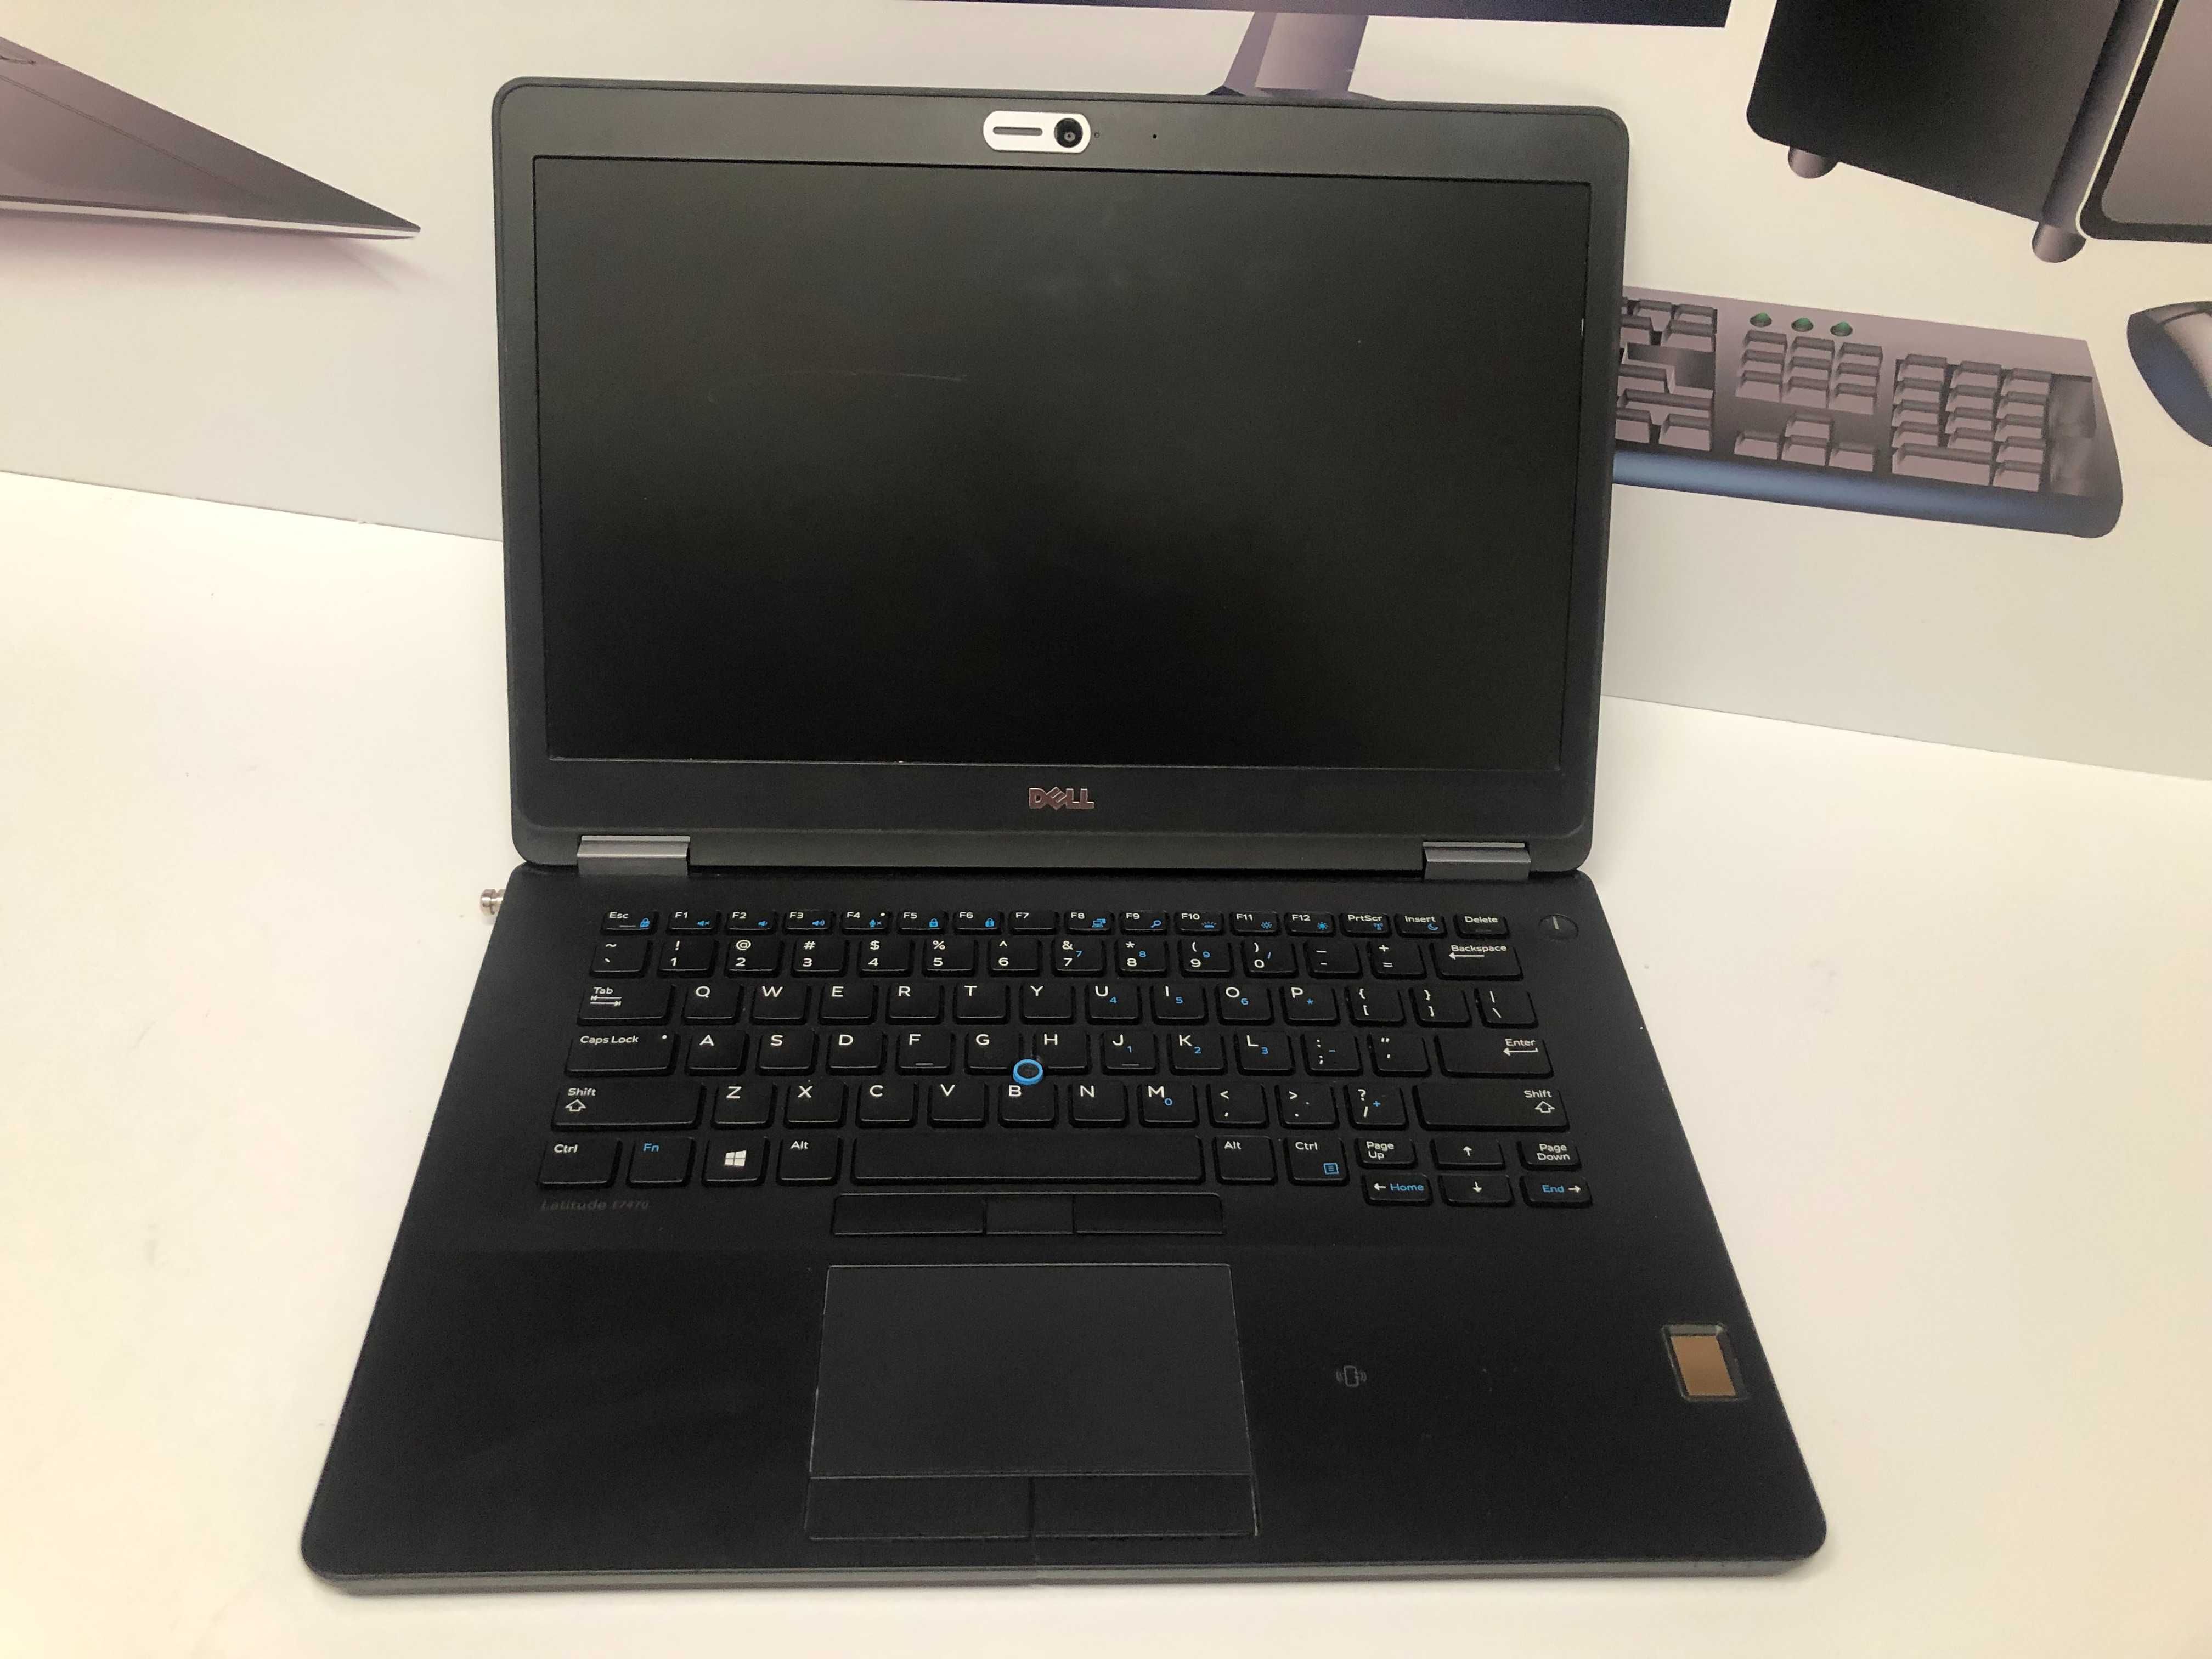 Super pret : Laptop Dell  E7470, I5 6300, 16 gb ddr4, ssd 256gb